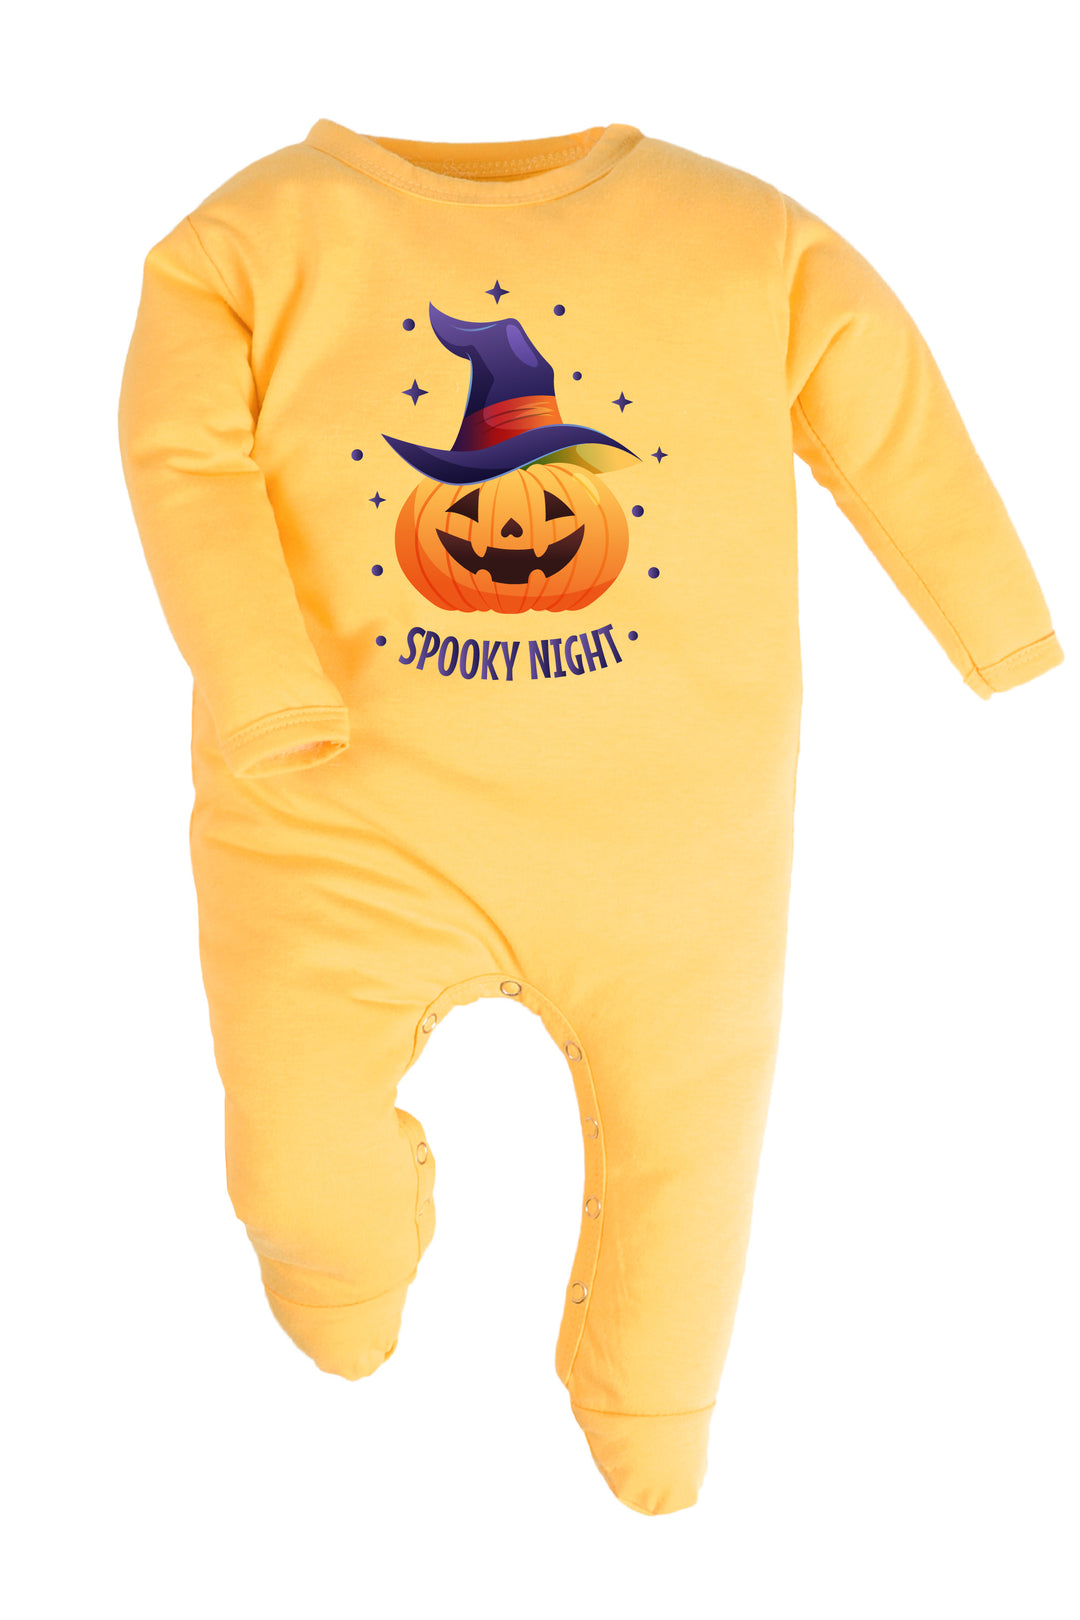 Spooky Night Baby Romper | Onesies